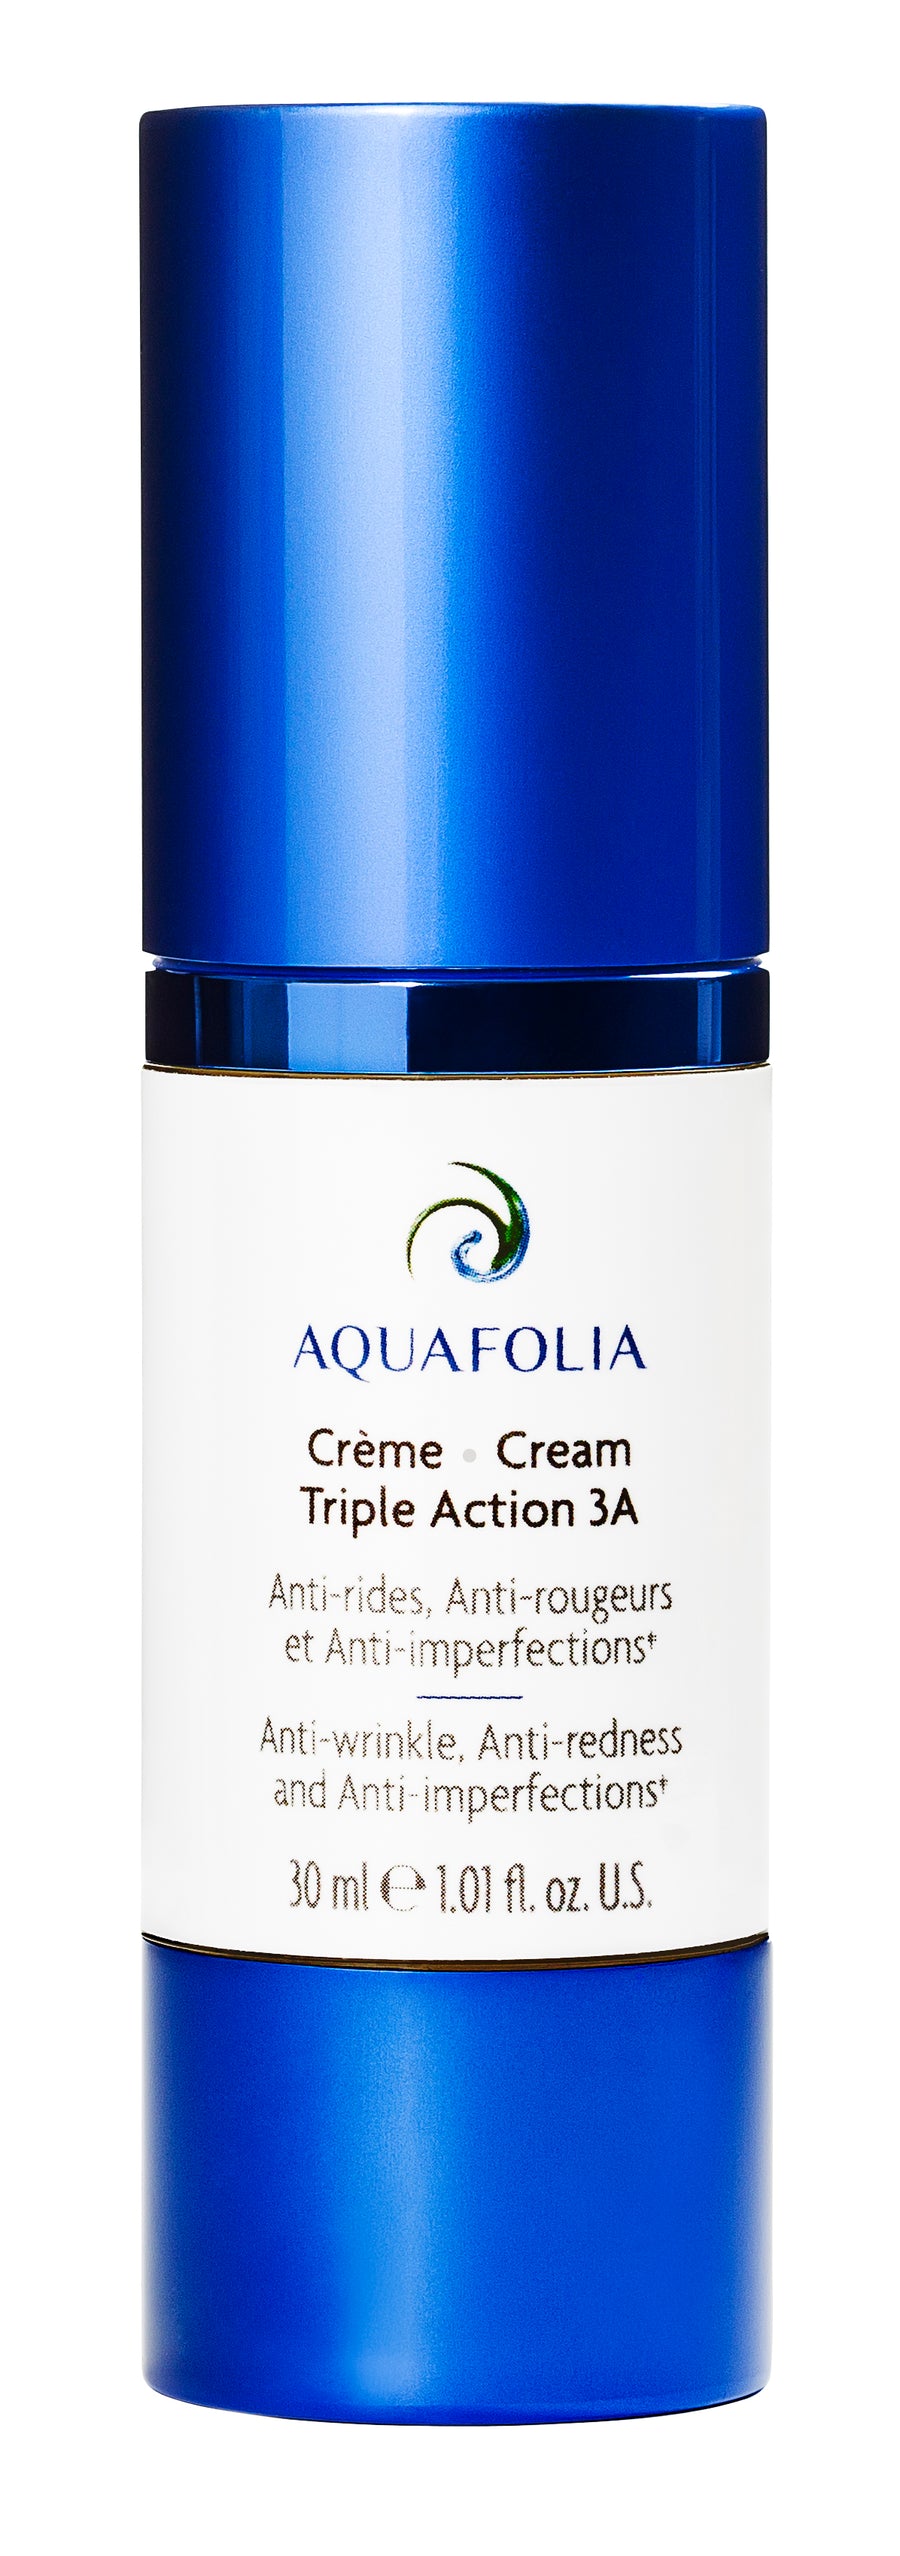 Aquafolia- Crème Triple Action 3A- Concept Triple Action 3A